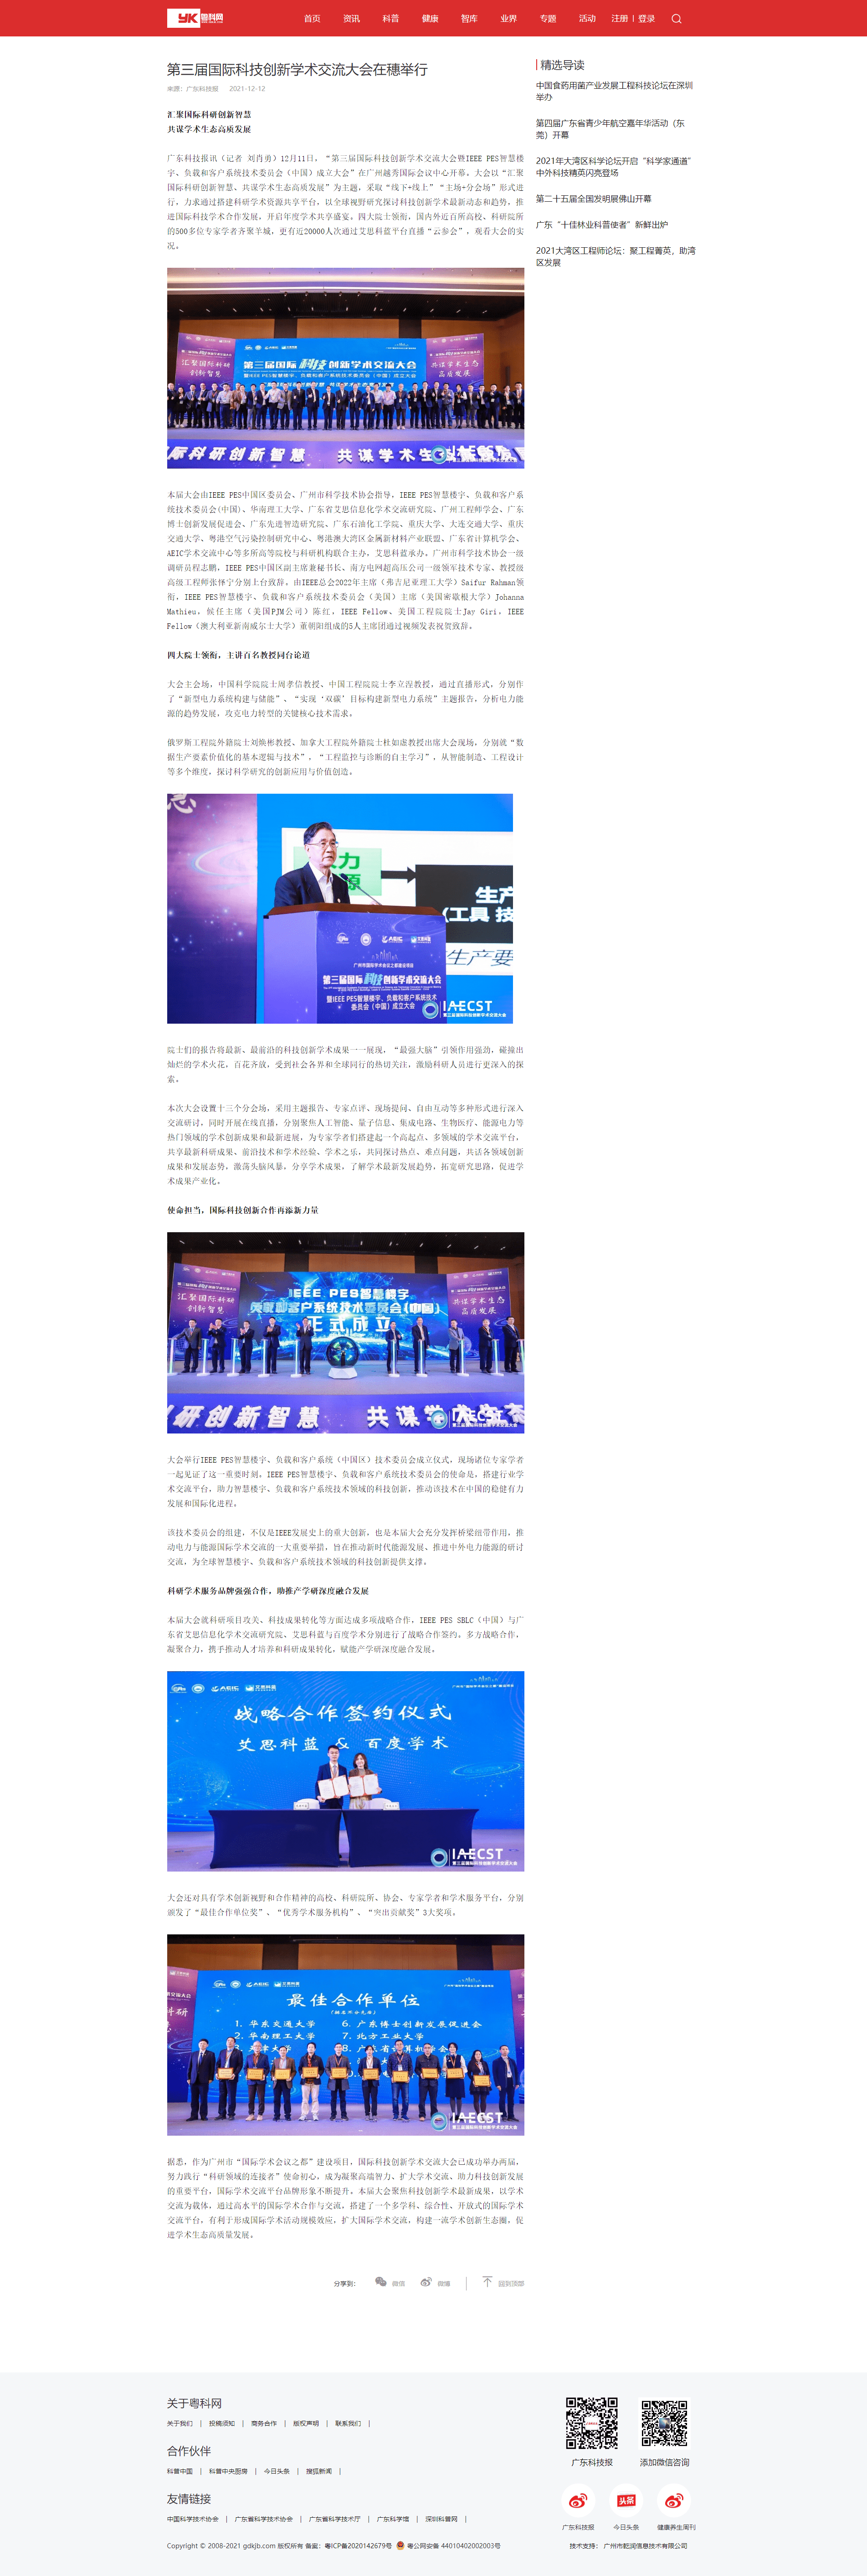 第三届科创大会-广东科技报（粤科网）.png